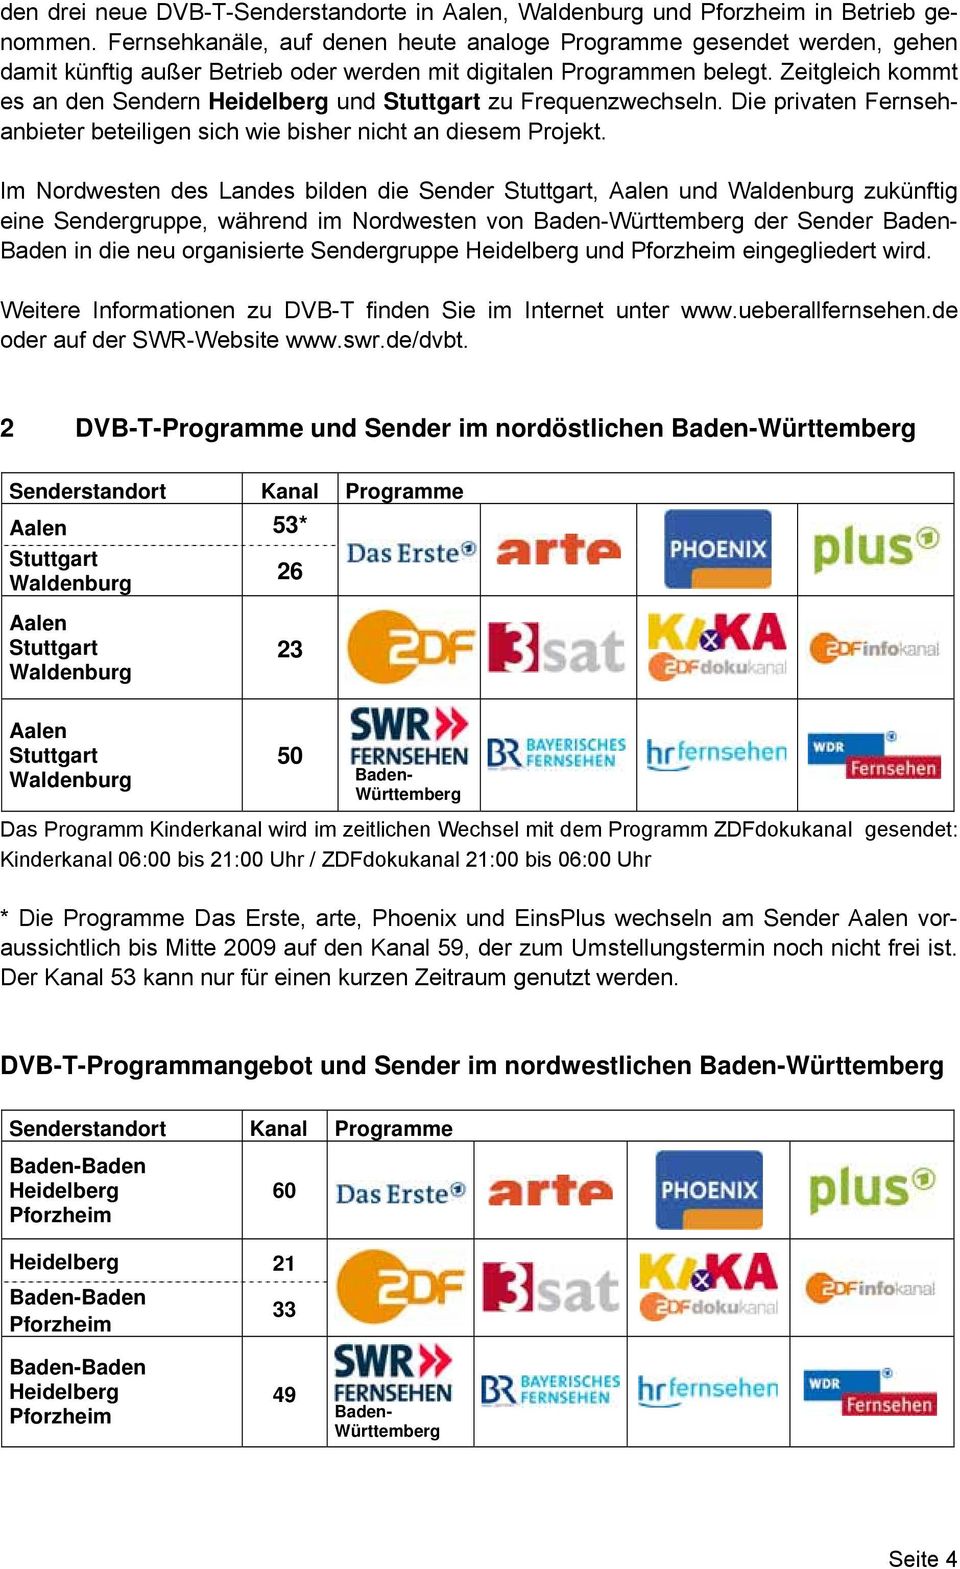 Zeitgleich kommt es an den Sendern Heidelberg und Stuttgart zu Frequenzwechseln. Die privaten Fernsehanbieter beteiligen sich wie bisher nicht an diesem Projekt.